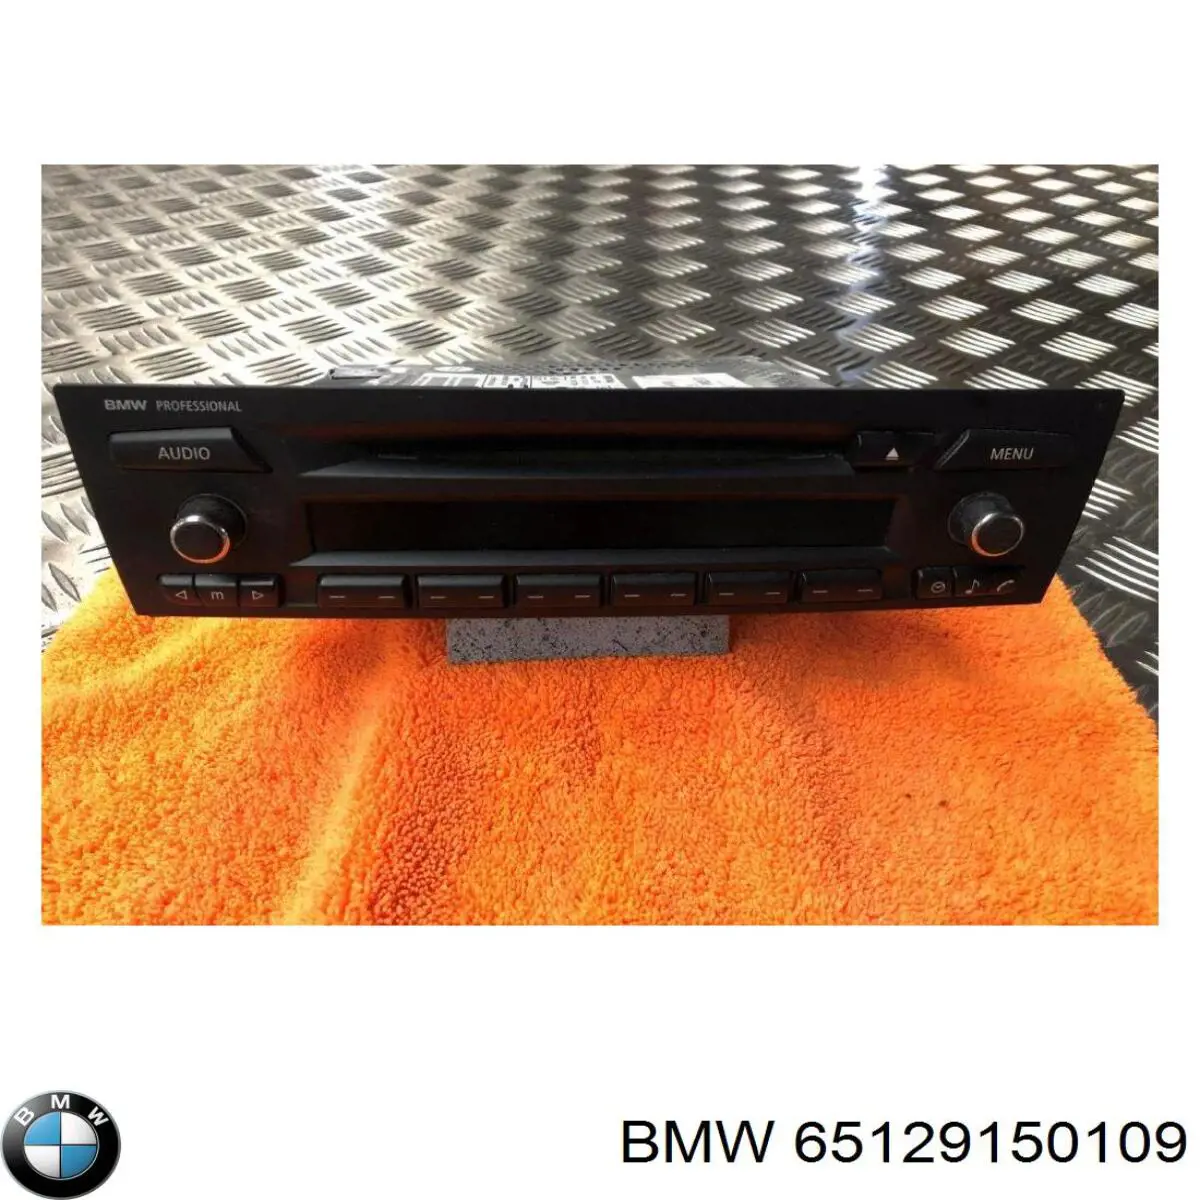 65126957351 BMW radio (radio am/fm)